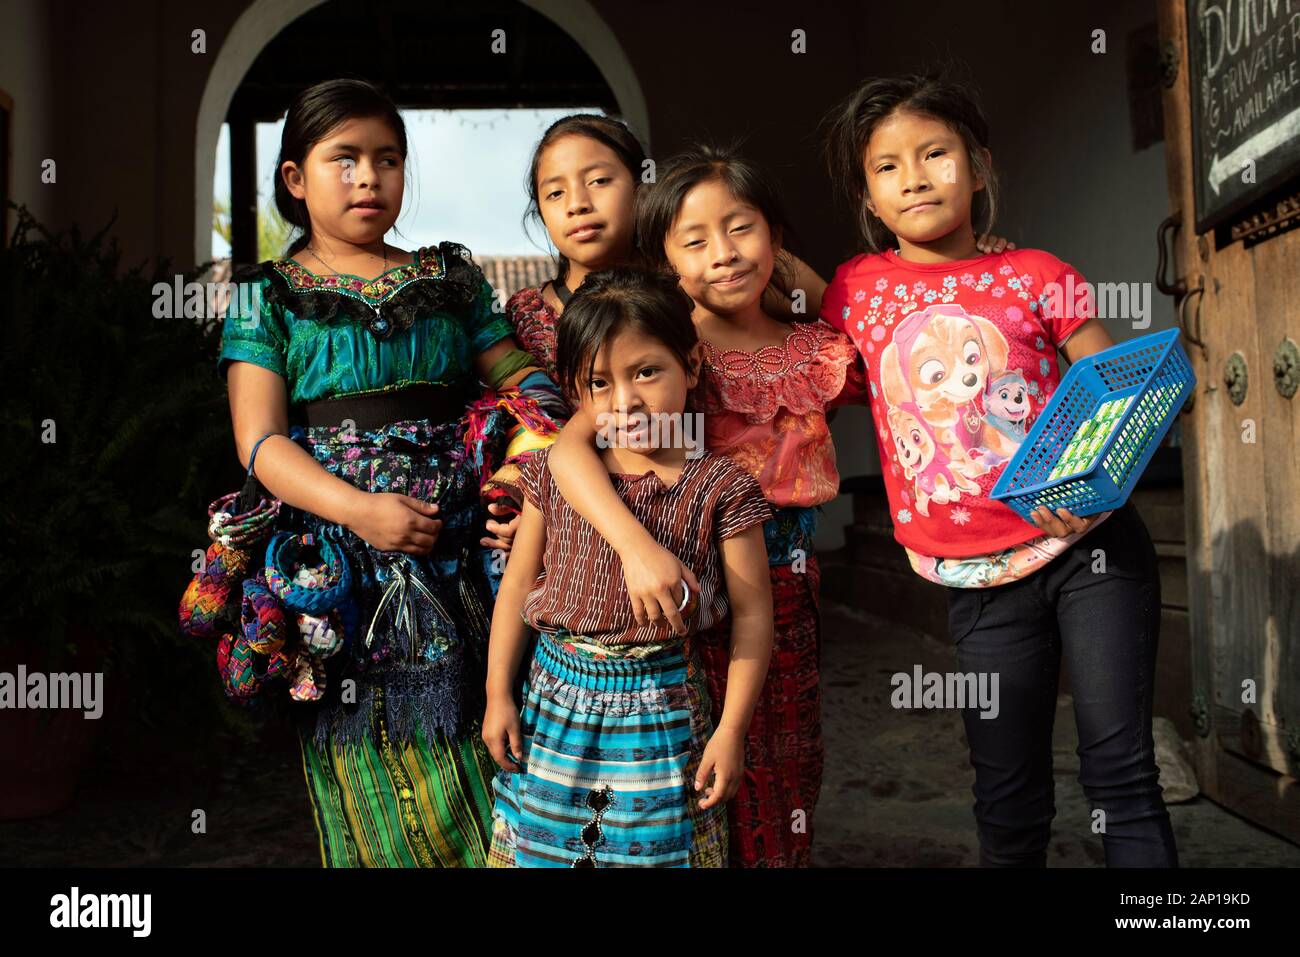 Gruppenfoto der Einheimischen, lokalen Kinder in Antigua, Guatemala. Einige tragen traditionelle Outfit, einige verkaufen handgefertigte Souvenirs. Dec 2018 Stockfoto